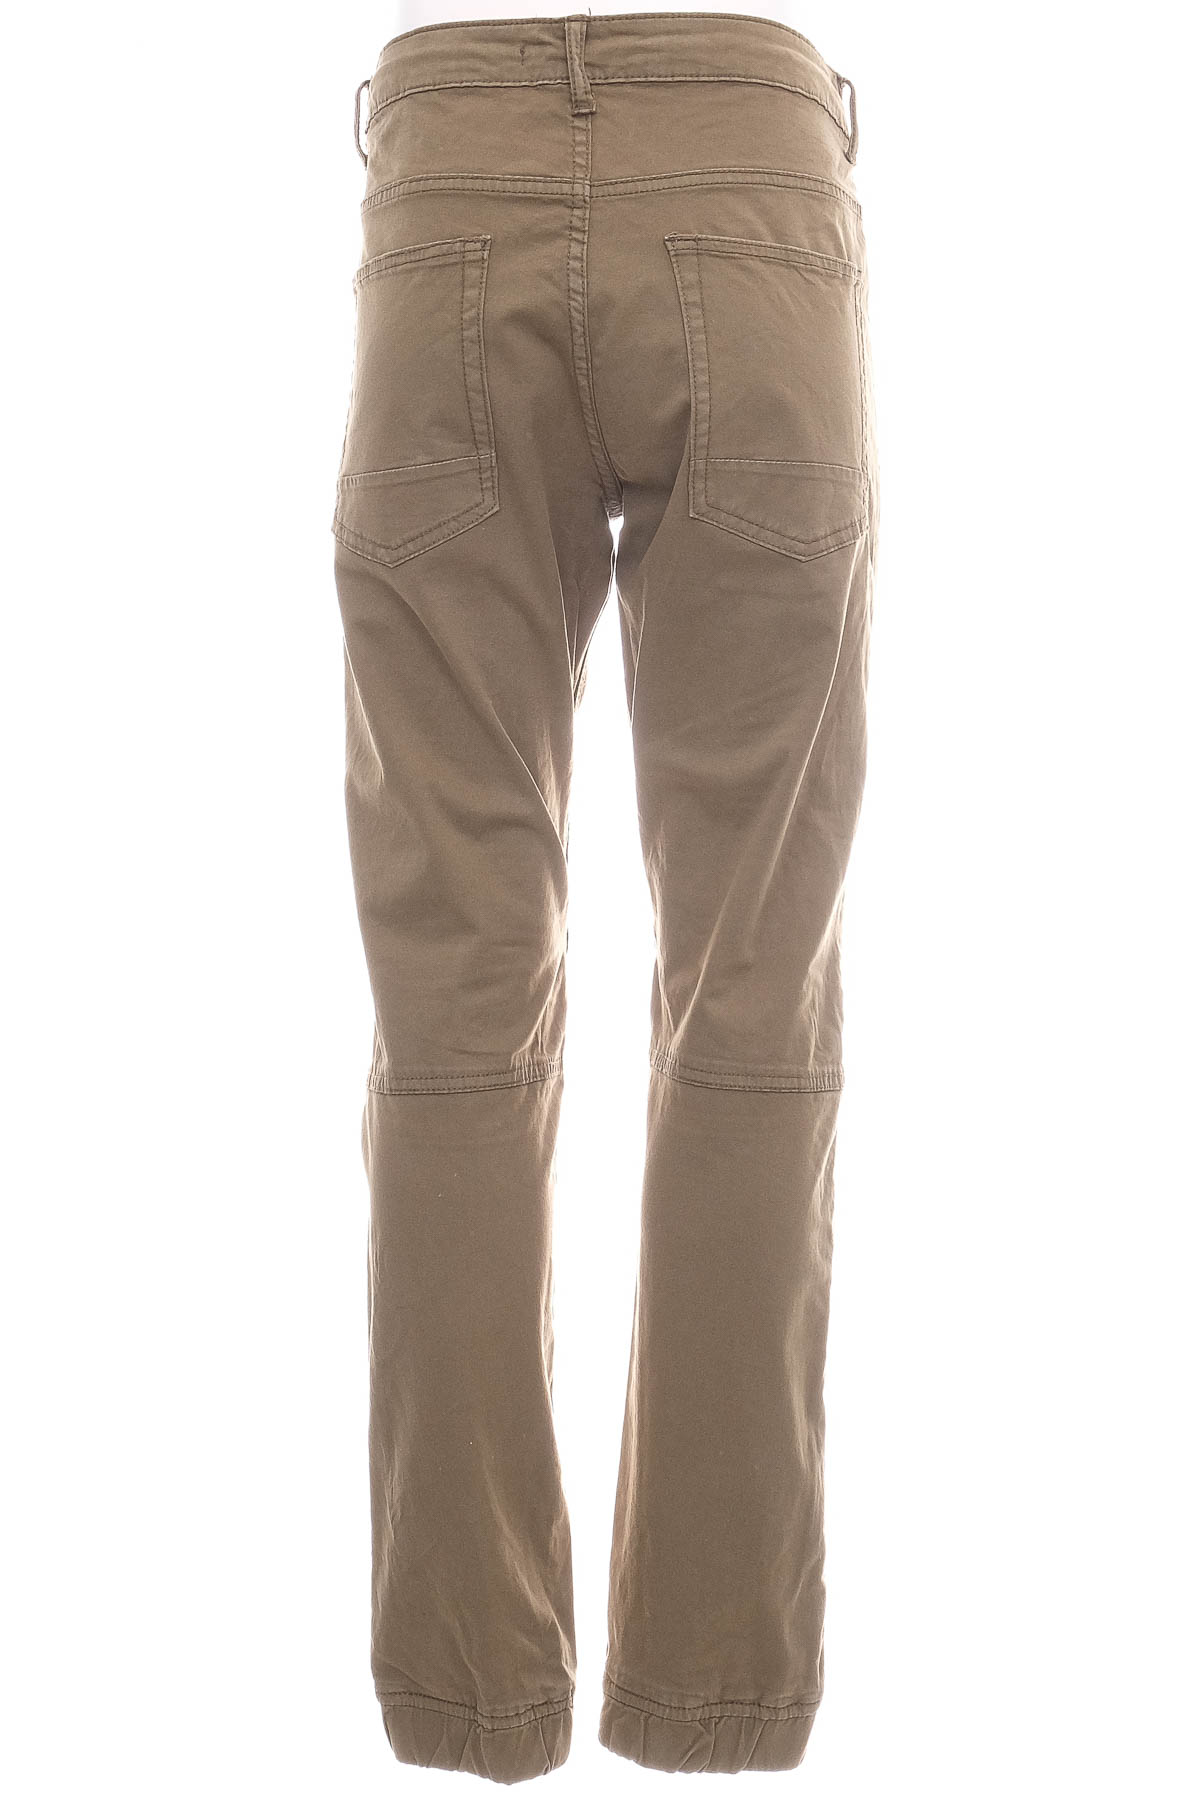 Pantalon pentru bărbați - FSBN - 1